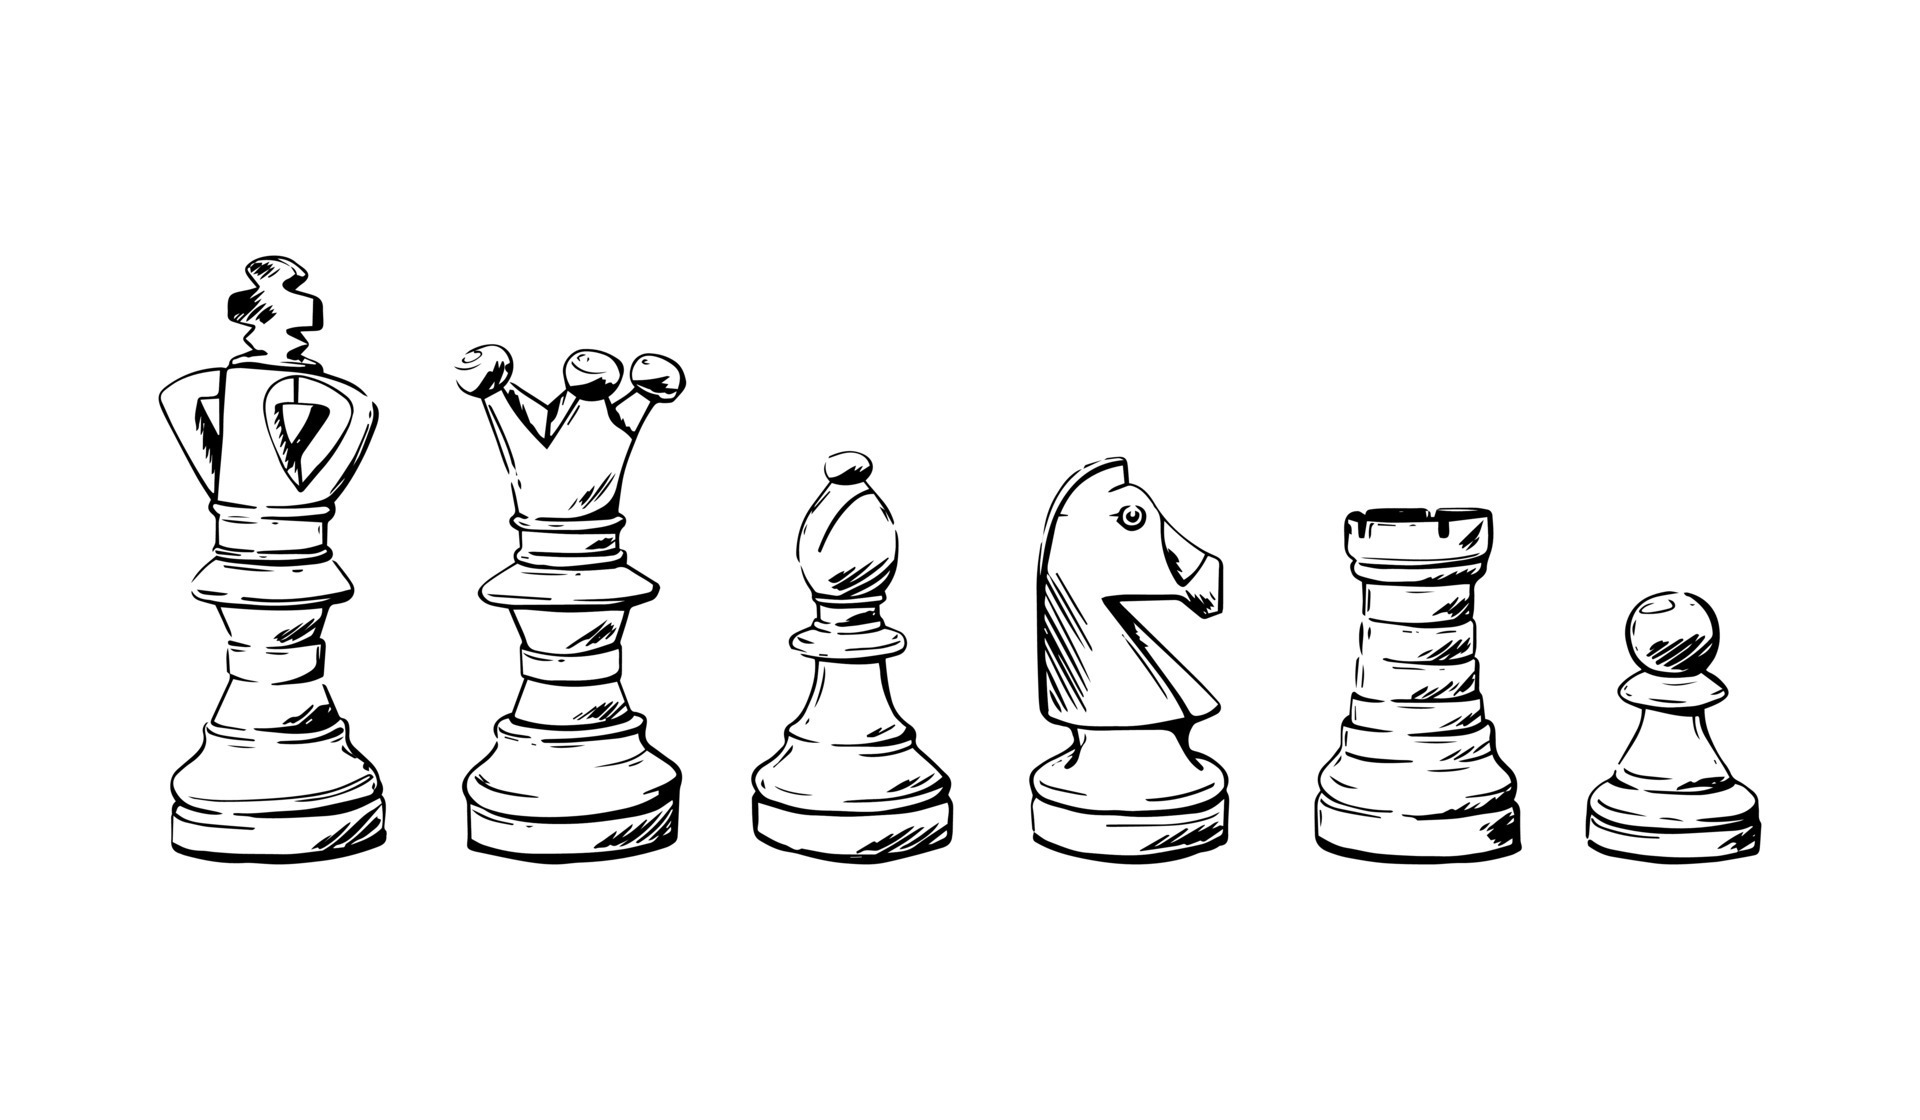 Dois peões são esboços de peças de xadrez. mentiras e paradas. ilustração  em vetor desenhados à mão.